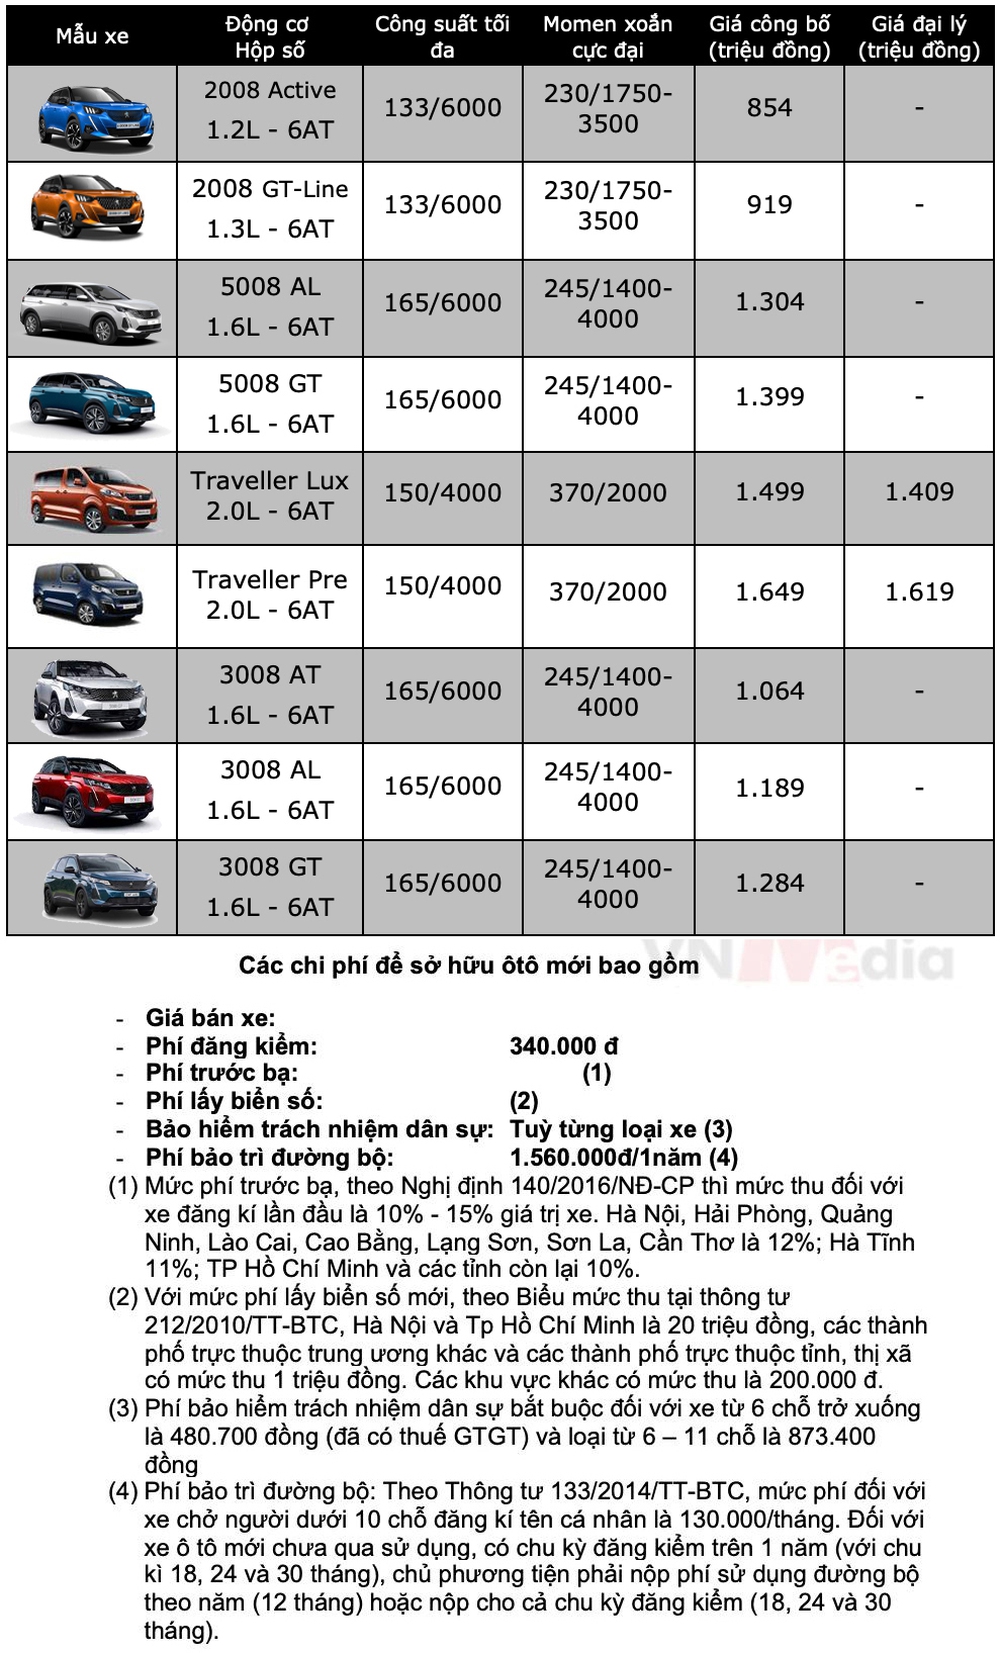 Bảng giá ô tô Peugeot tháng 2: Peugeot 5008 được ưu đãi tới 36 triệu đồng - Ảnh 2.